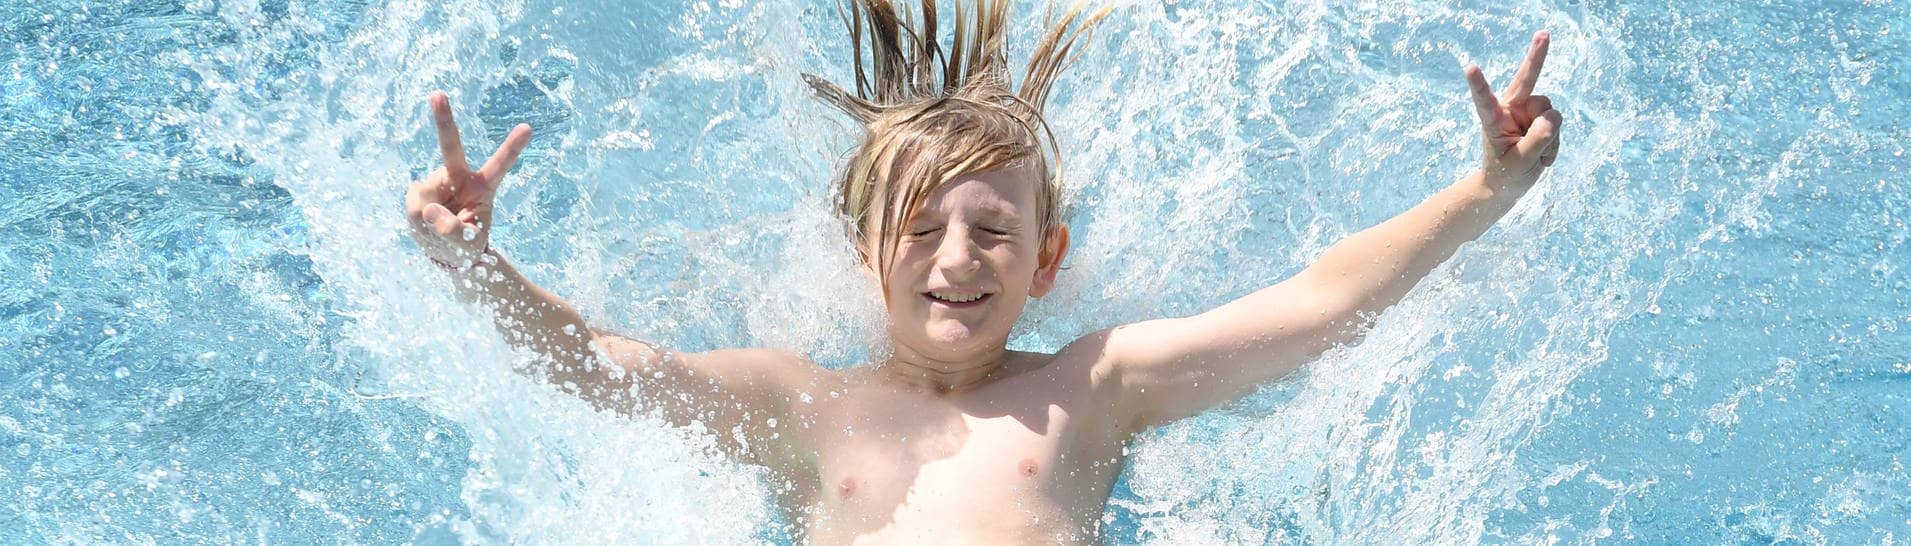 Ein Junge springt rückwärts in ein Schwimmbecken